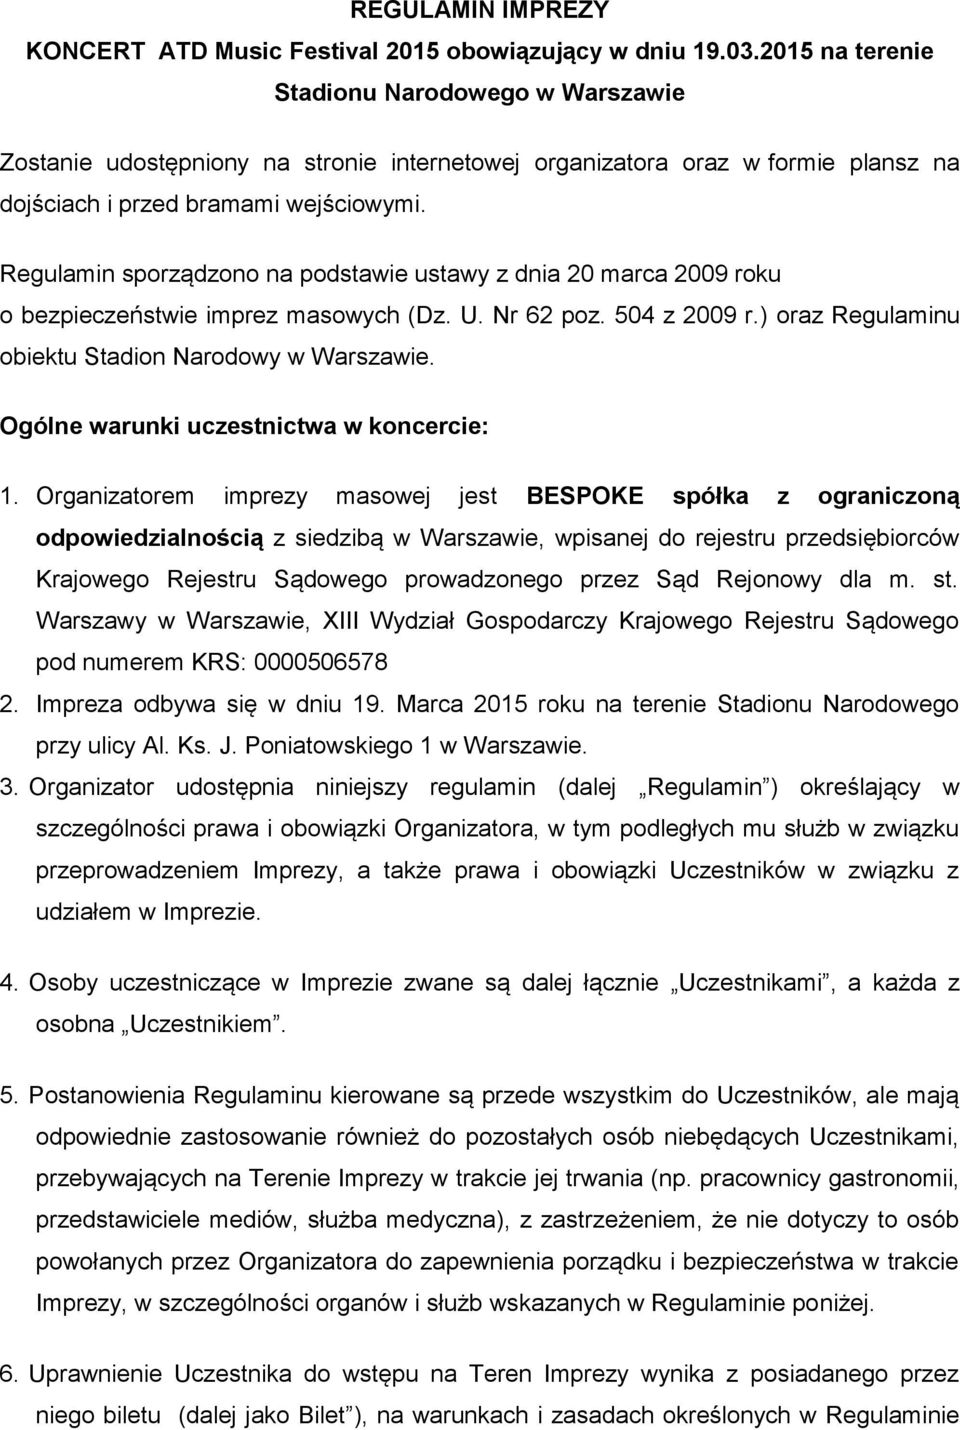 Regulamin sporządzono na podstawie ustawy z dnia 20 marca 2009 roku o bezpieczeństwie imprez masowych (Dz. U. Nr 62 poz. 504 z 2009 r.) oraz Regulaminu obiektu Stadion Narodowy w Warszawie.